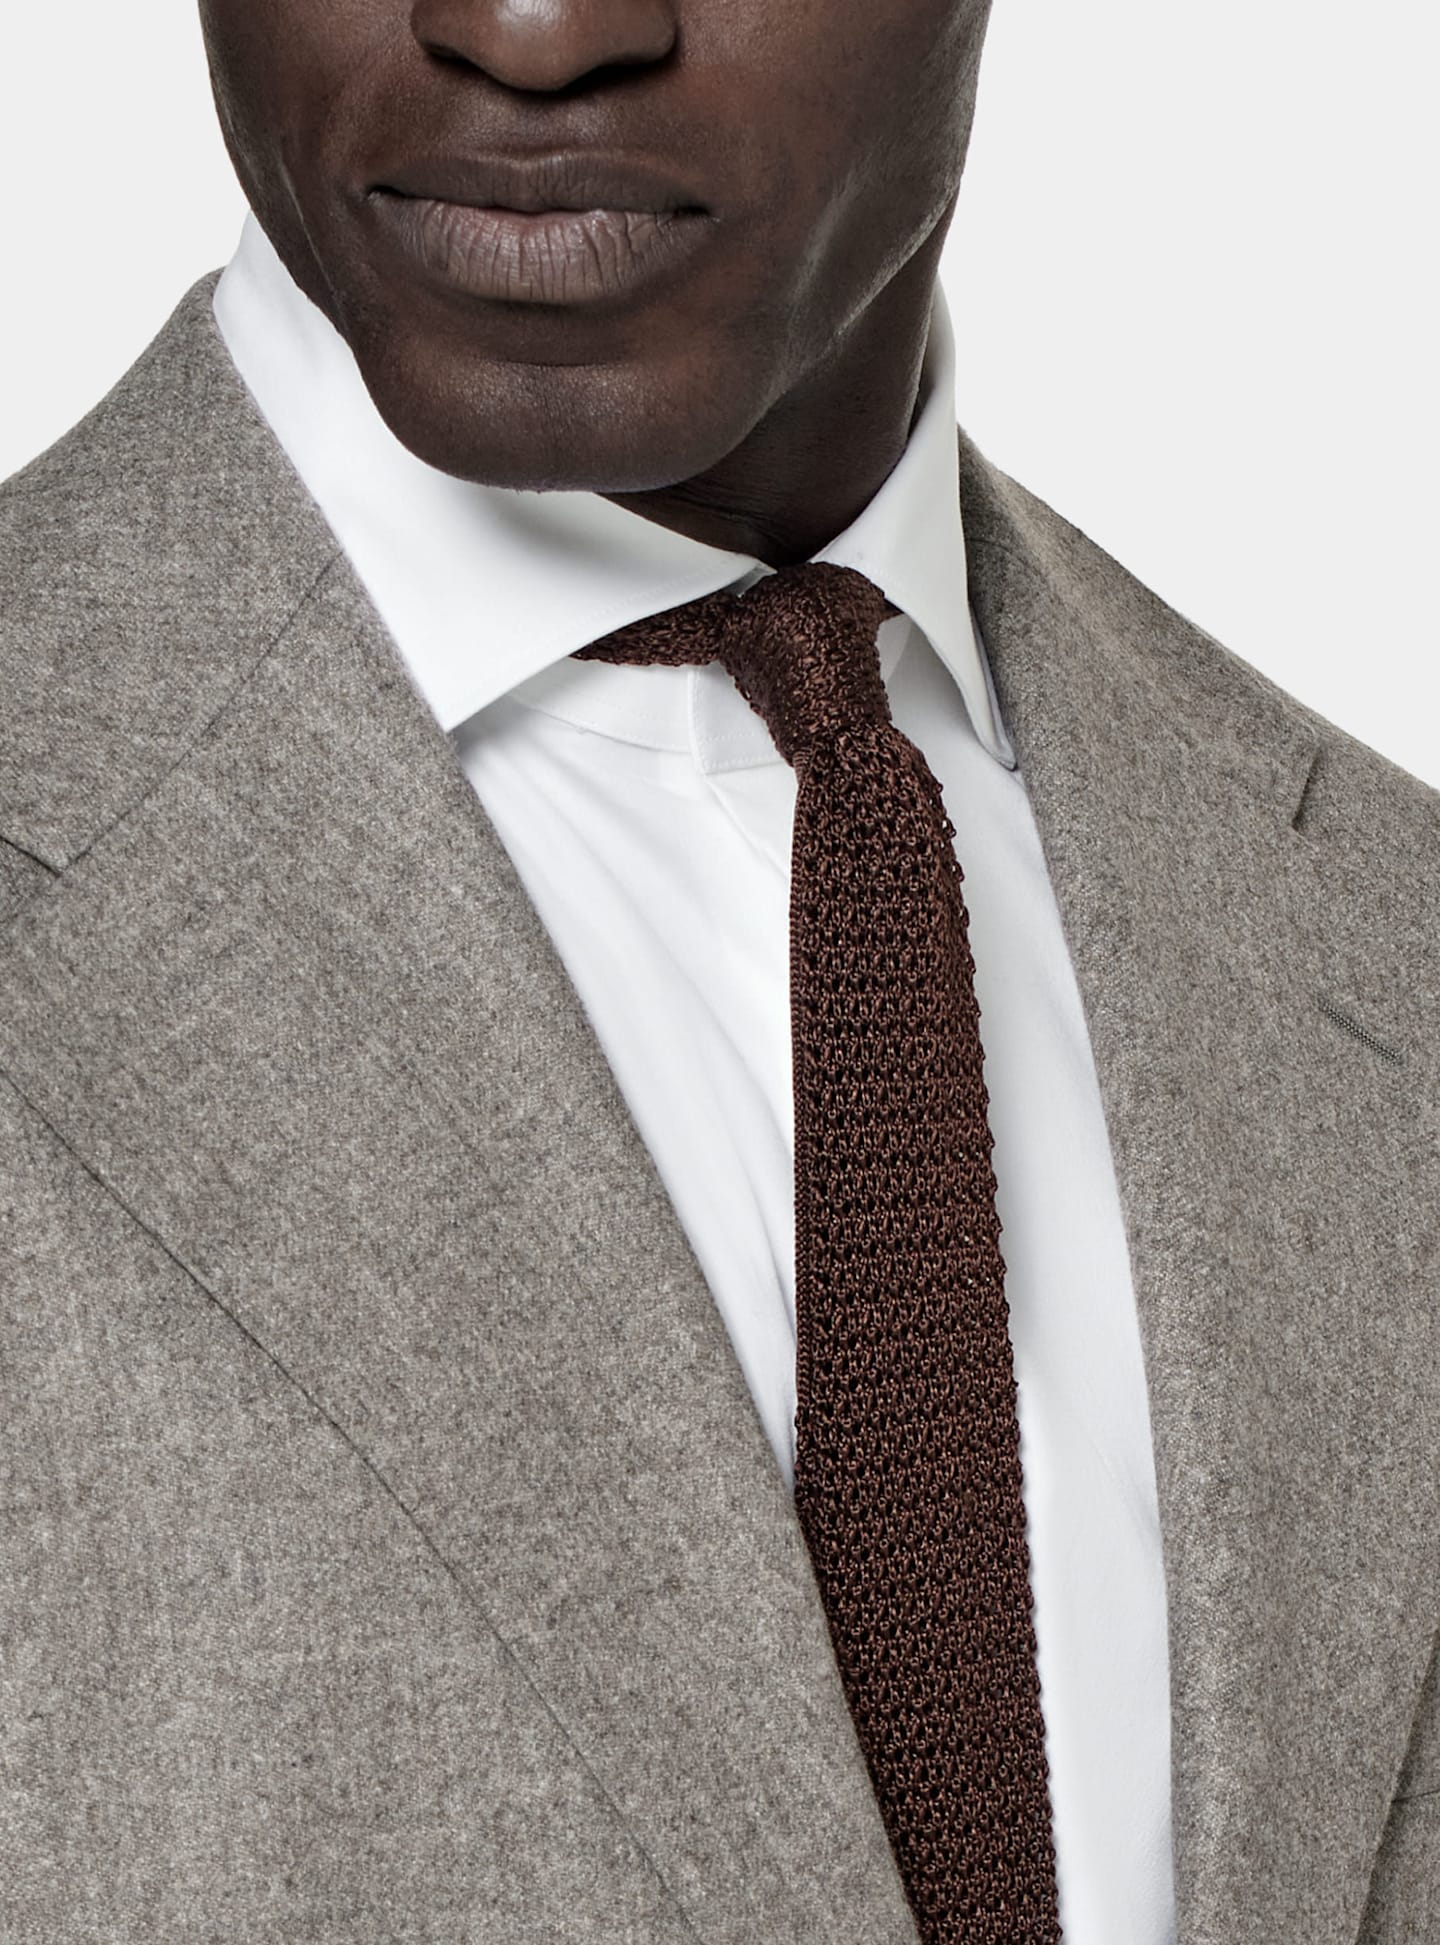 灰色单排扣西装搭配棕色针织丝绸领带的细节。